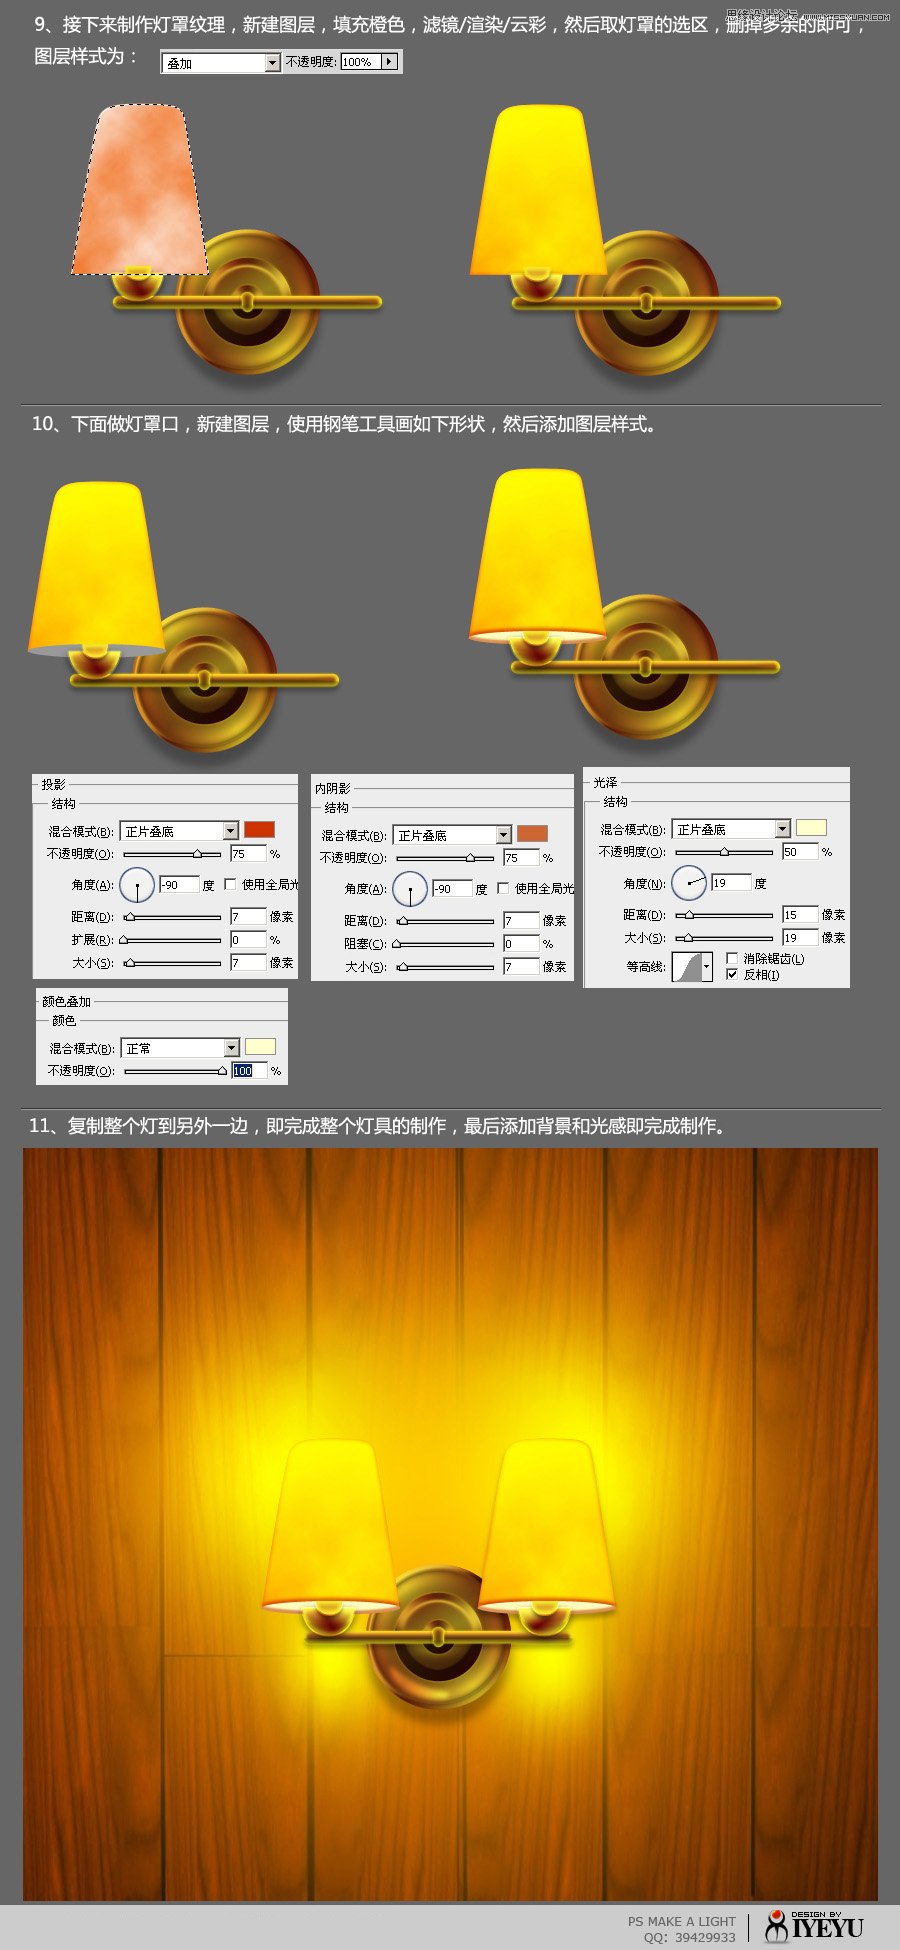 Photoshop绘制温暖的室内夜灯效果,PS教程,16xx8.com教程网